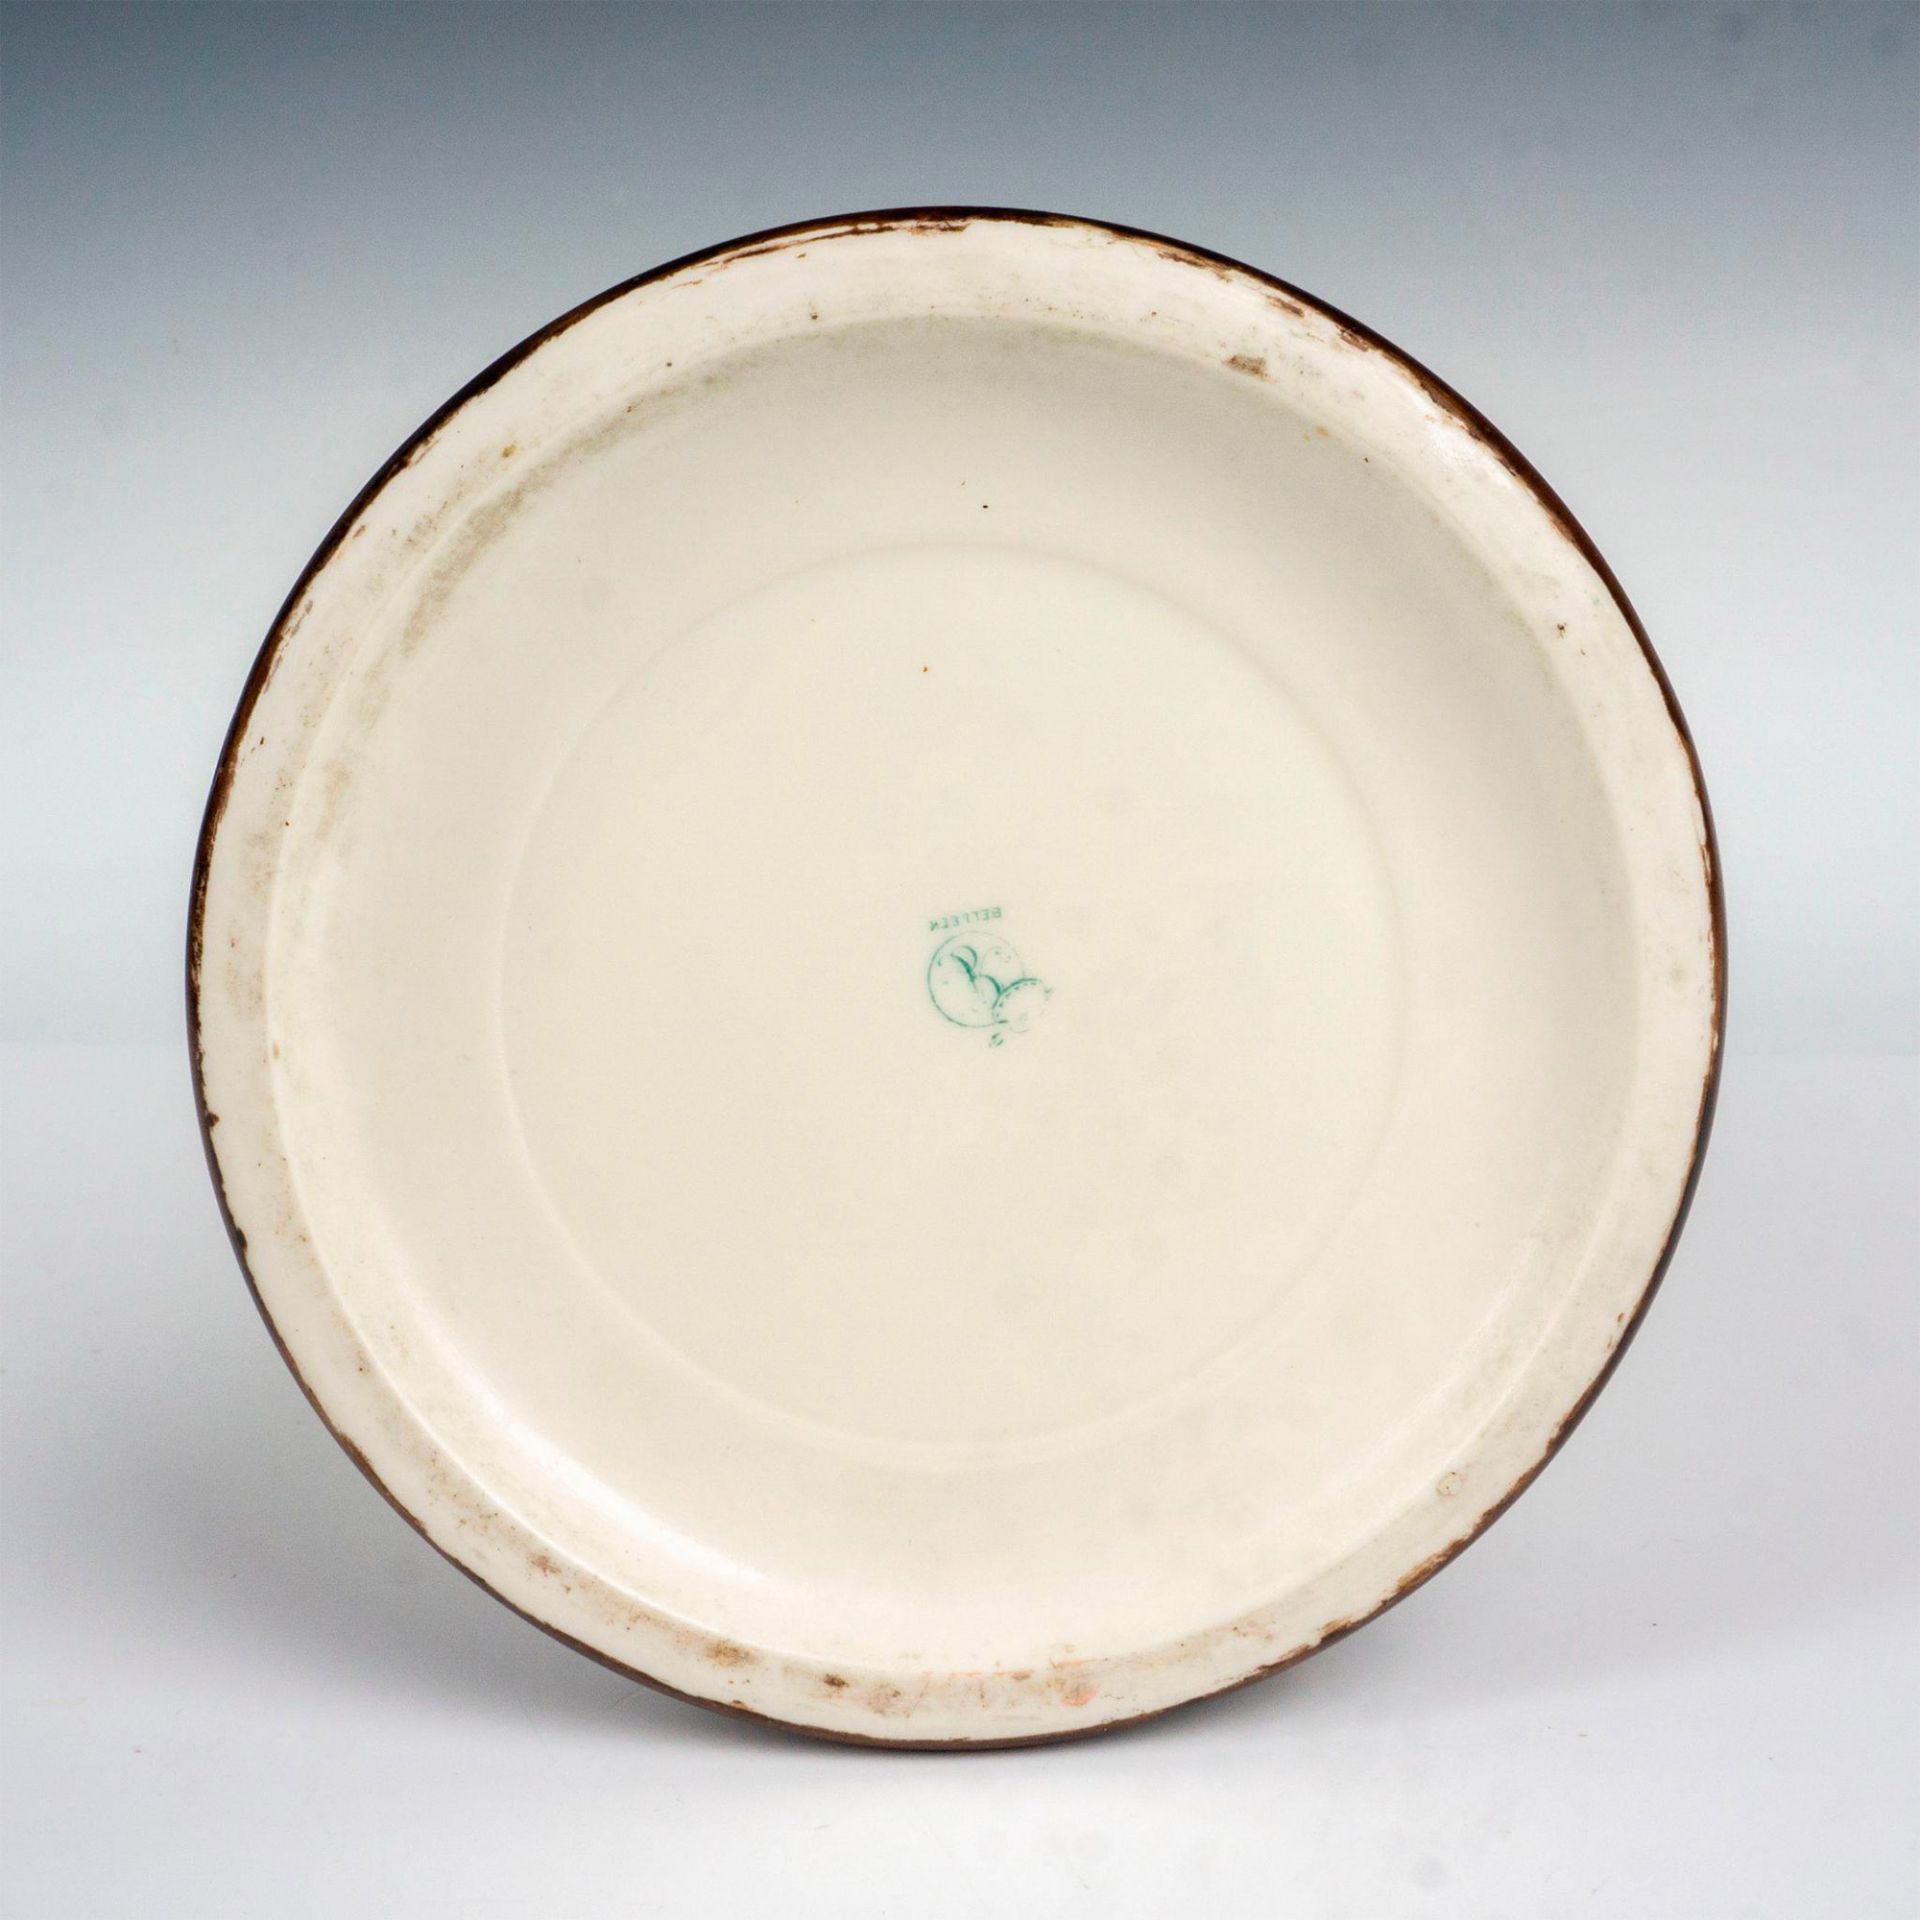 Large Belleek Porcelain Tankard Pitcher - Image 3 of 3